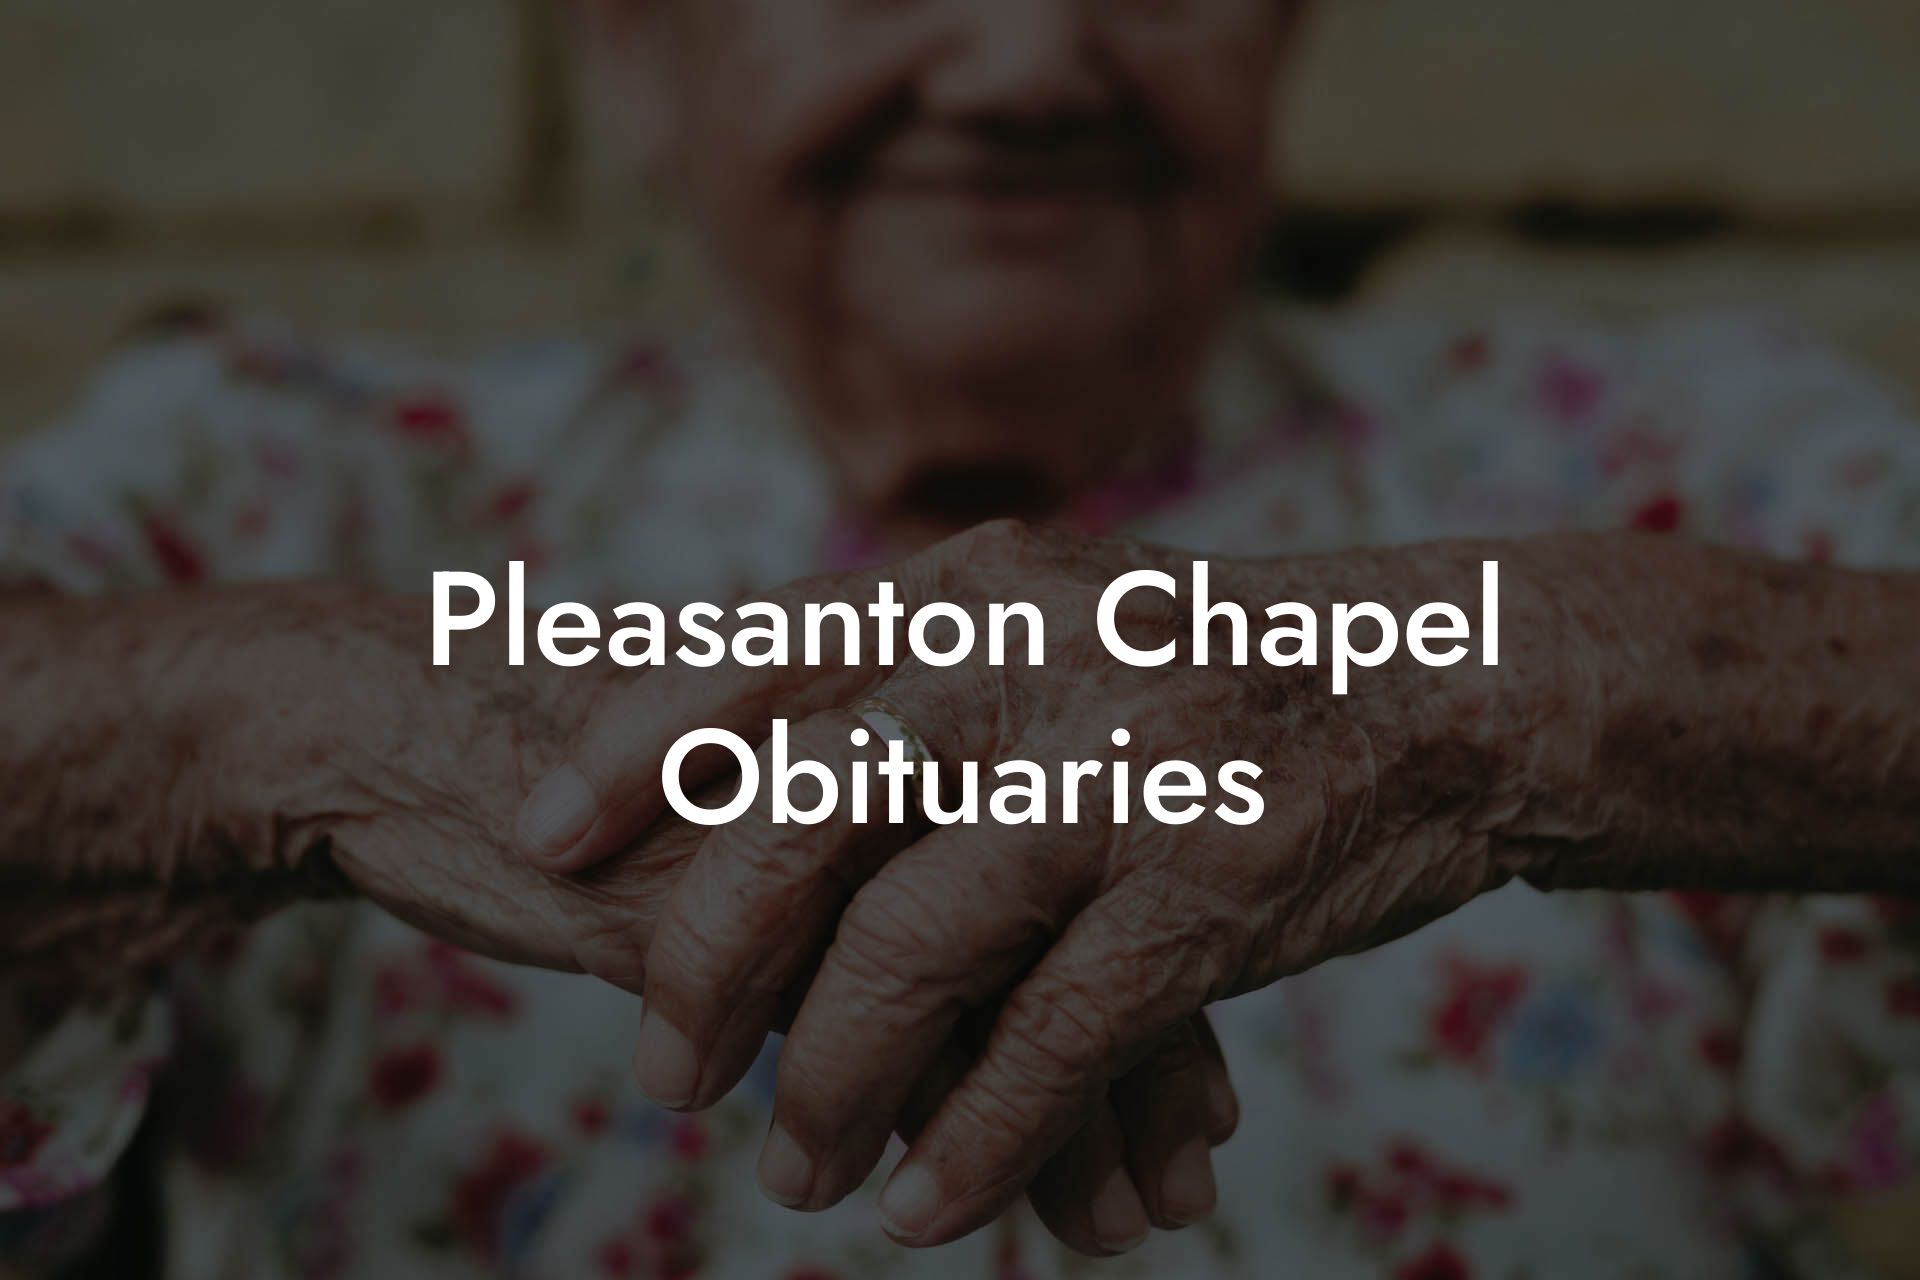 Pleasanton Chapel Obituaries